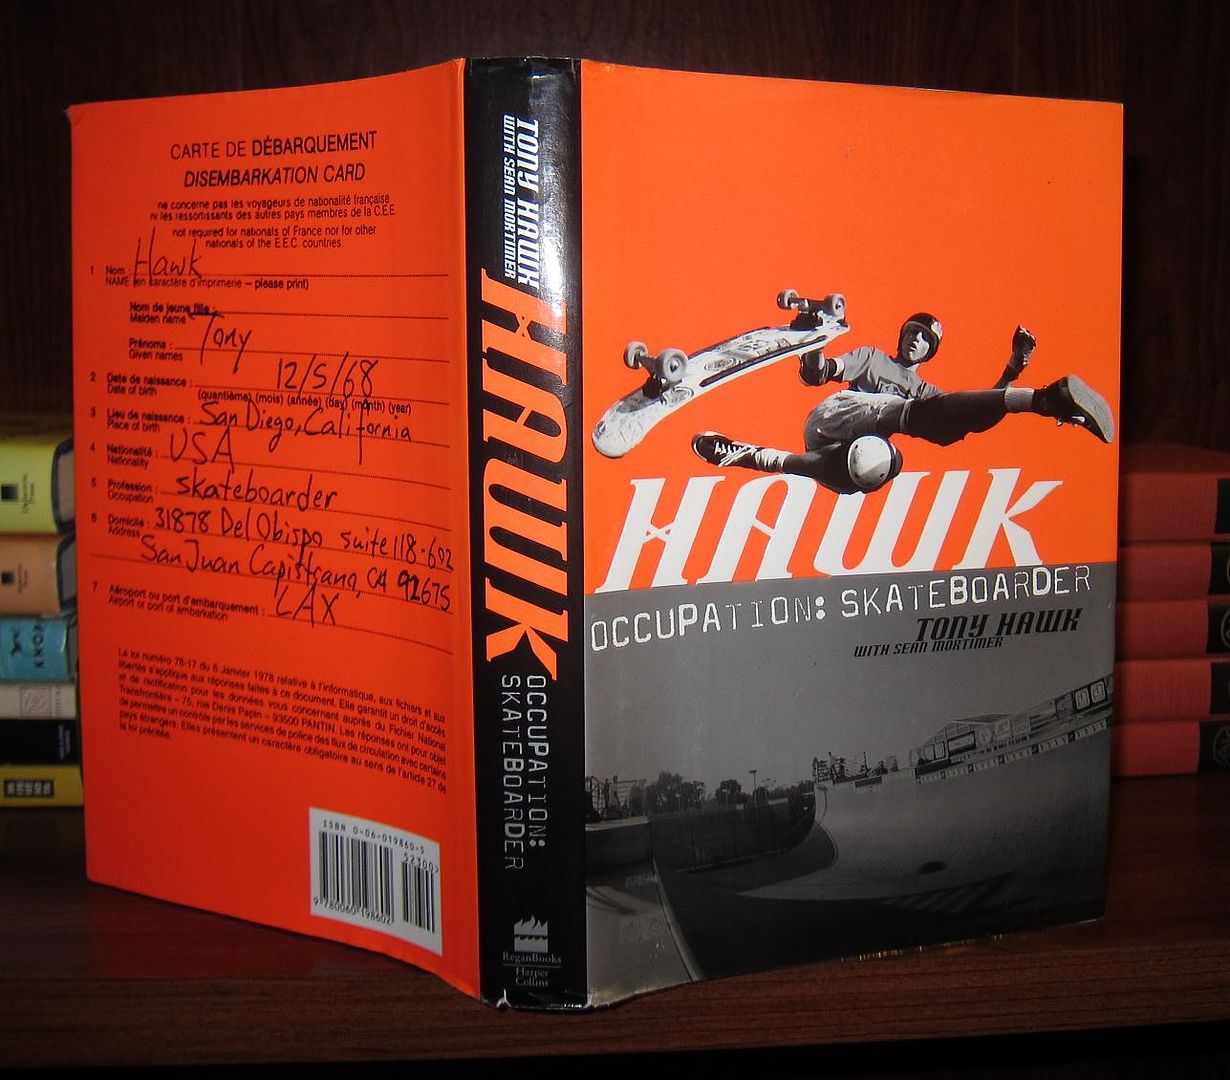 HAWK, TONY - Hawk Occupation: Skateboarder